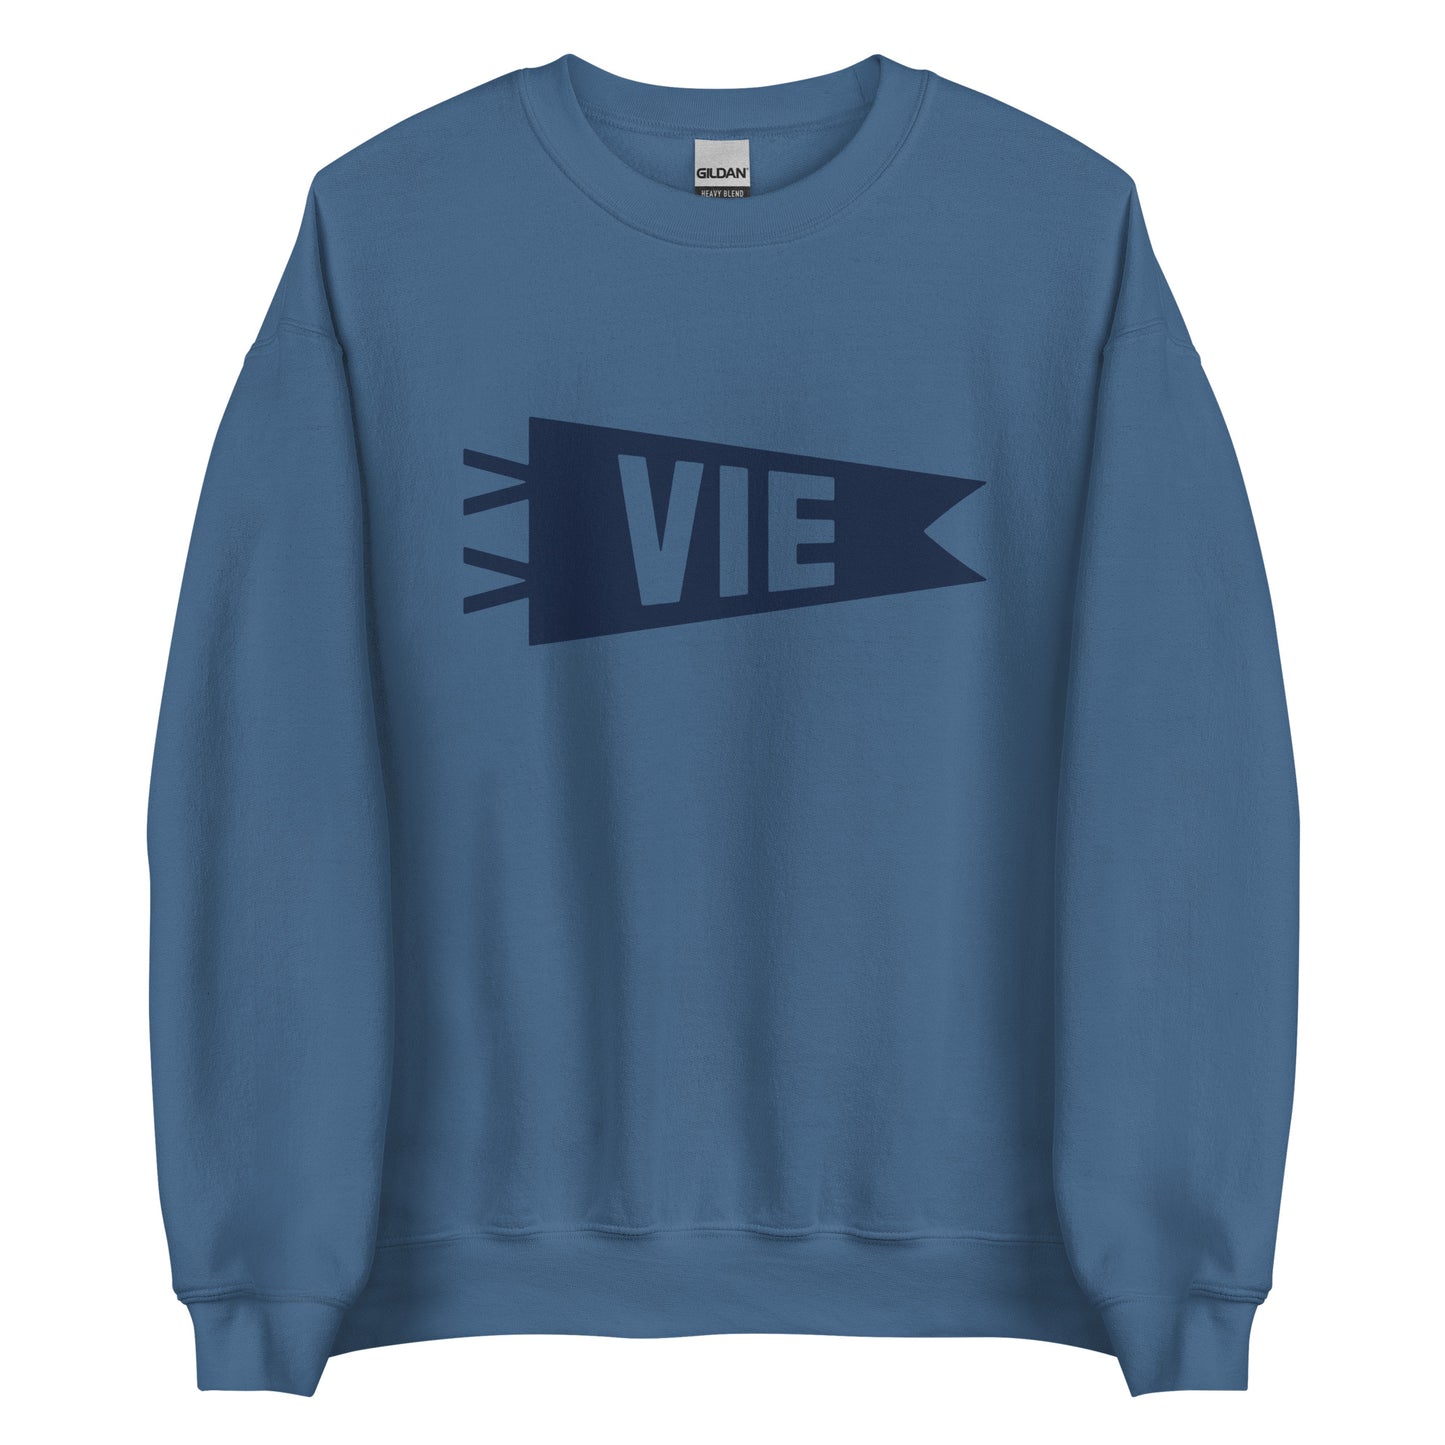 Airport Code Sweatshirt - Navy Blue Graphic • VIE Vienna • YHM Designs - Image 05